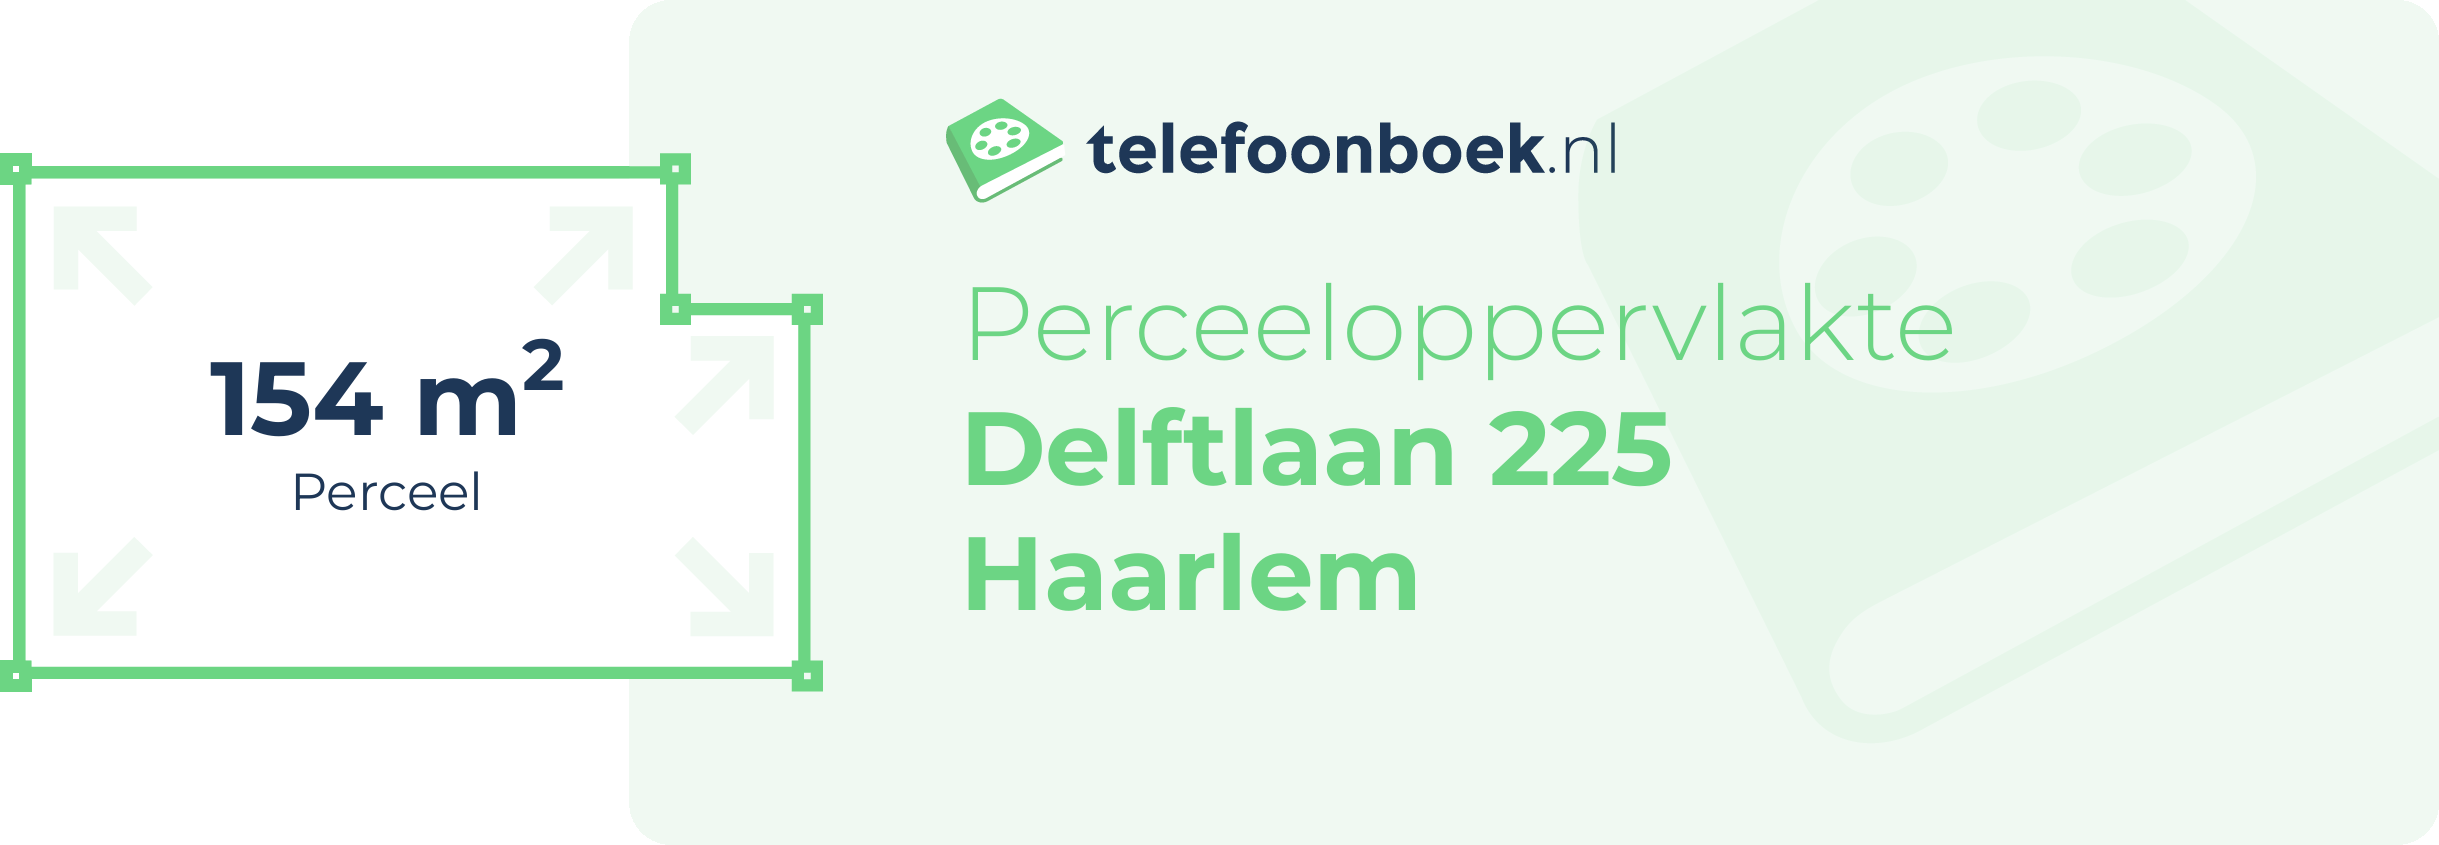 Perceeloppervlakte Delftlaan 225 Haarlem